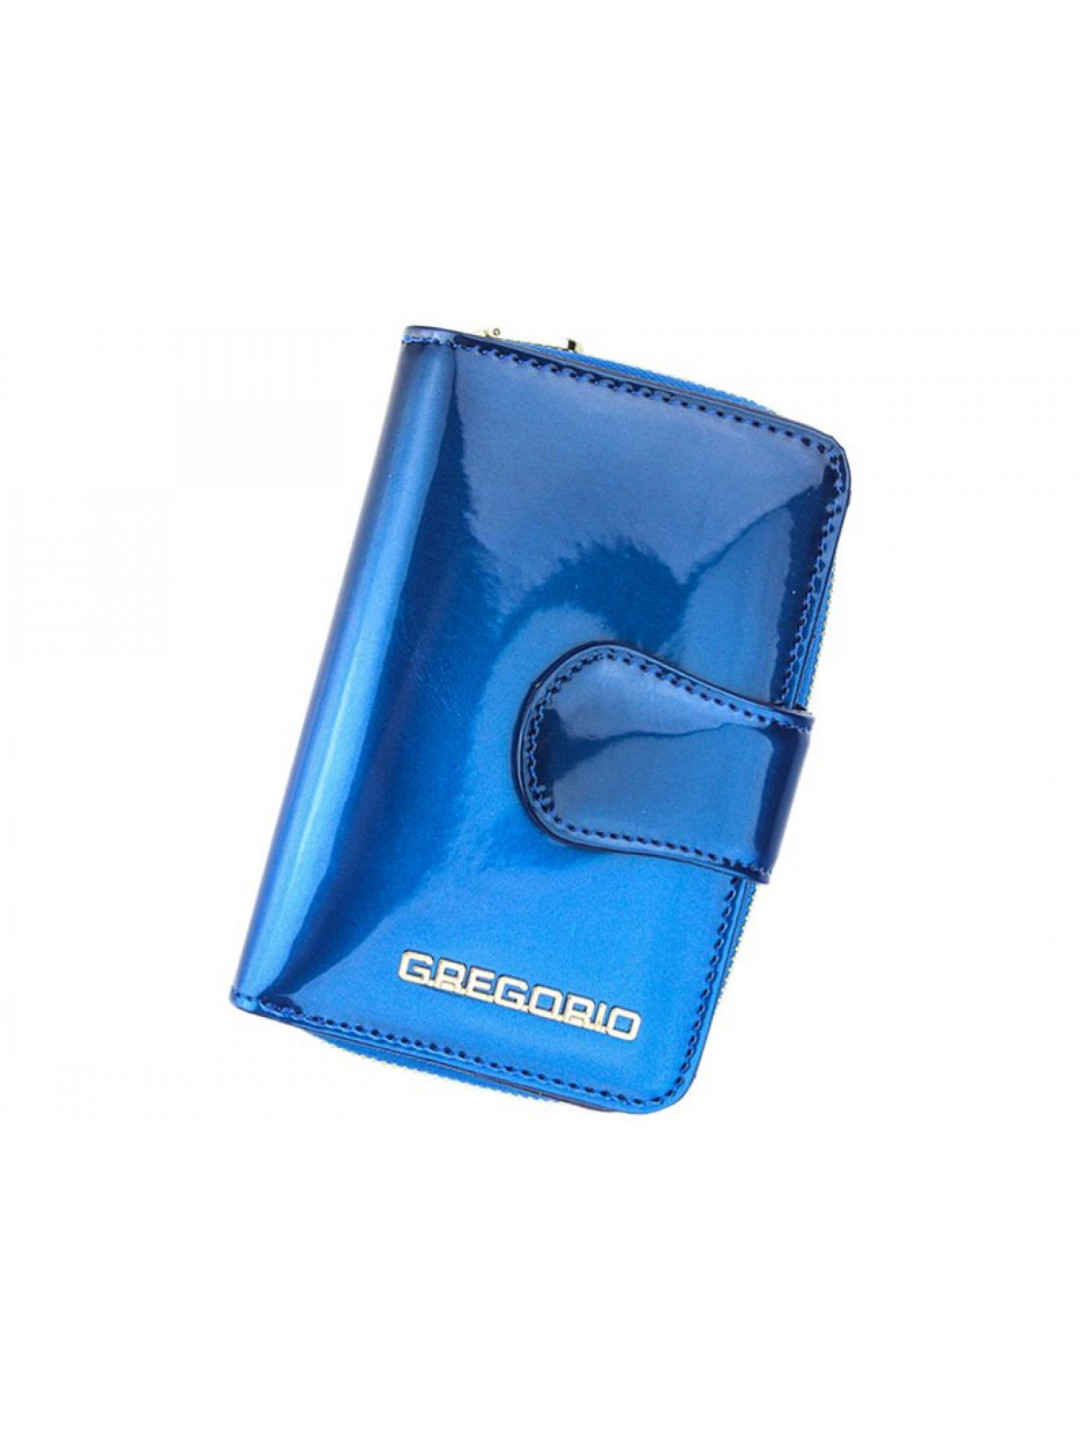 Dámská malá elegantní kožená peněženka Gregorio Eliana modrá